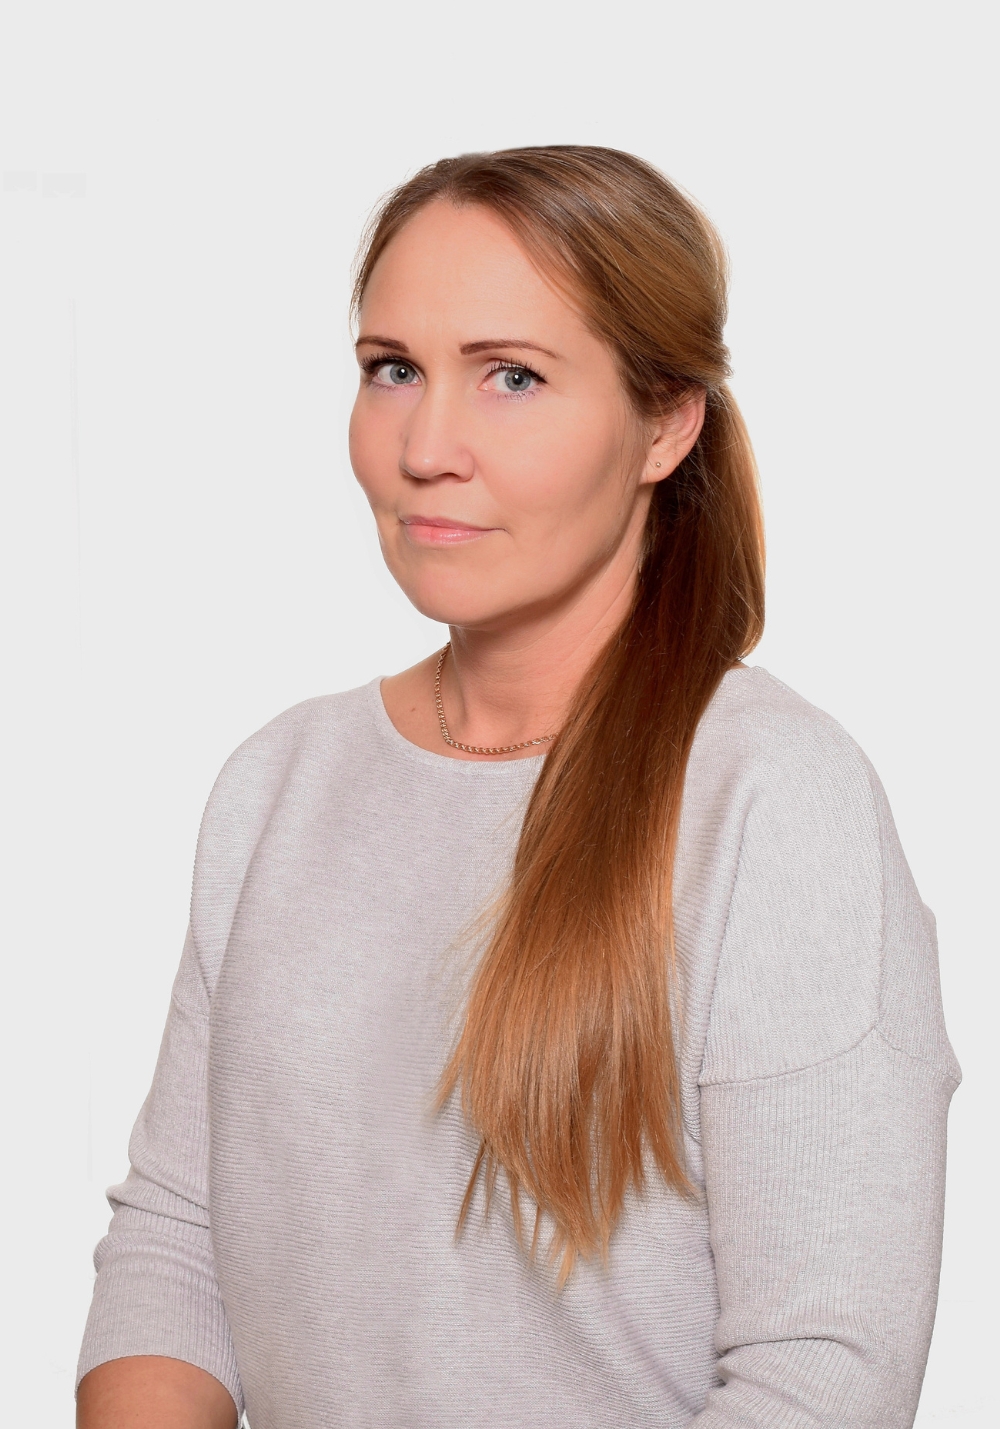 Monika Kaljula